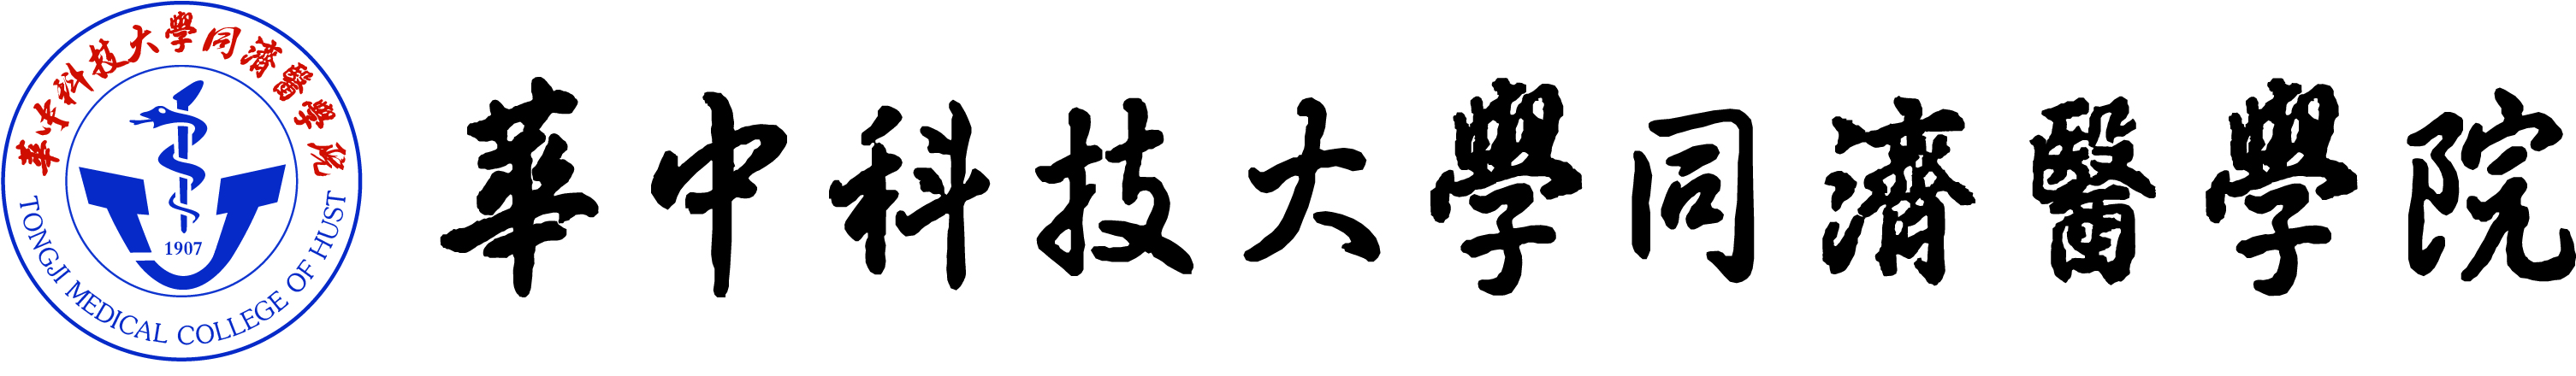 同济医学院logo+文字.jpg